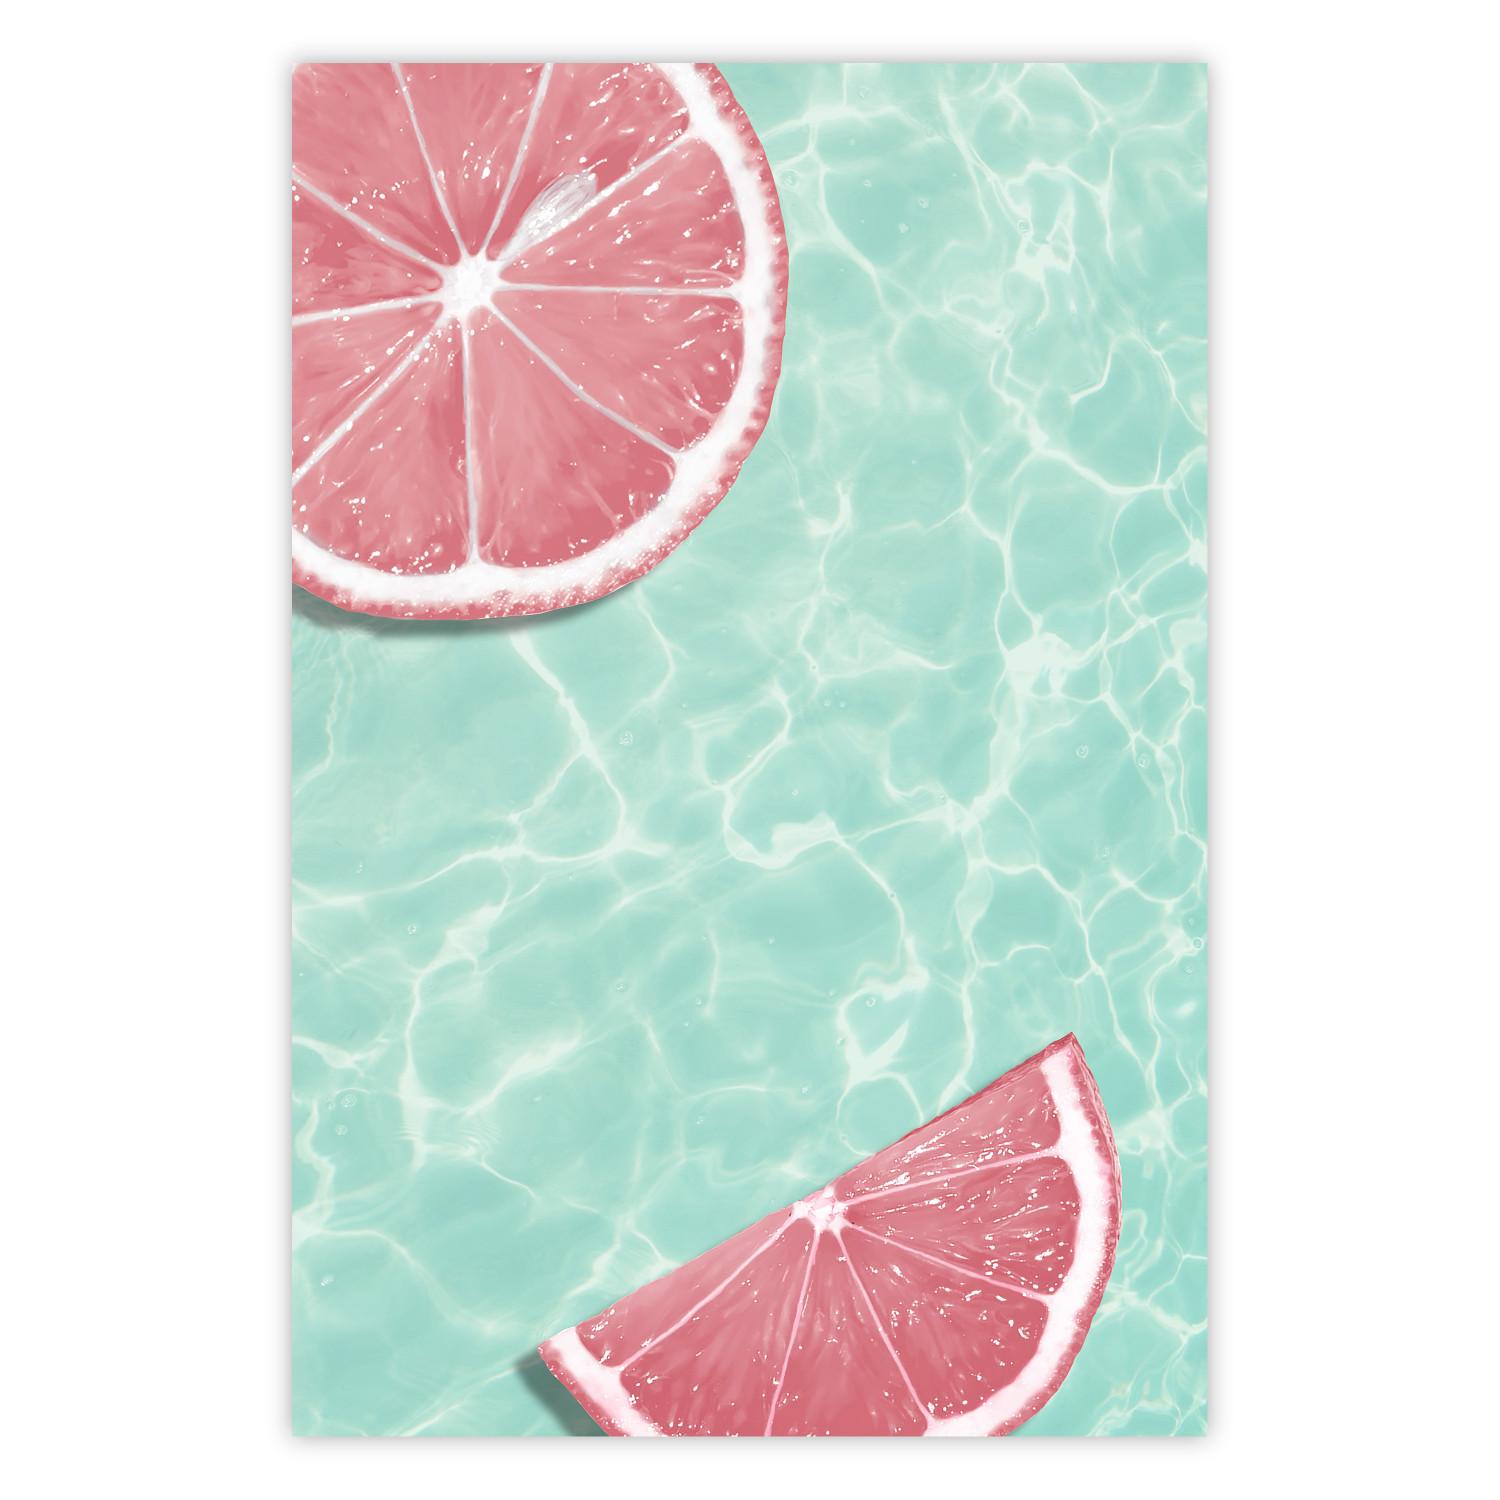 Cartel Tono refrescante - frutas tropicales rosadas flotando en el agua